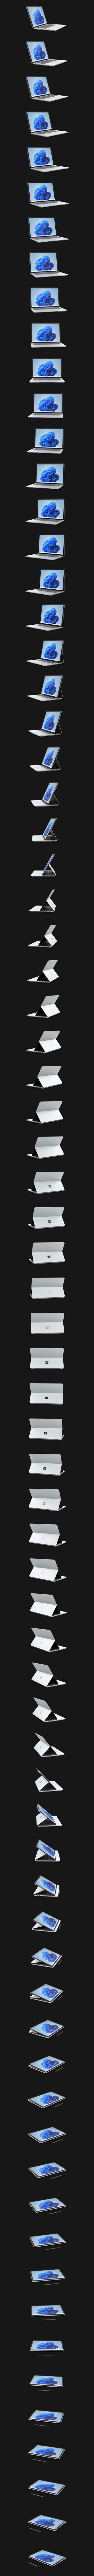 Surface Laptop Studio die 360 graden roteert.